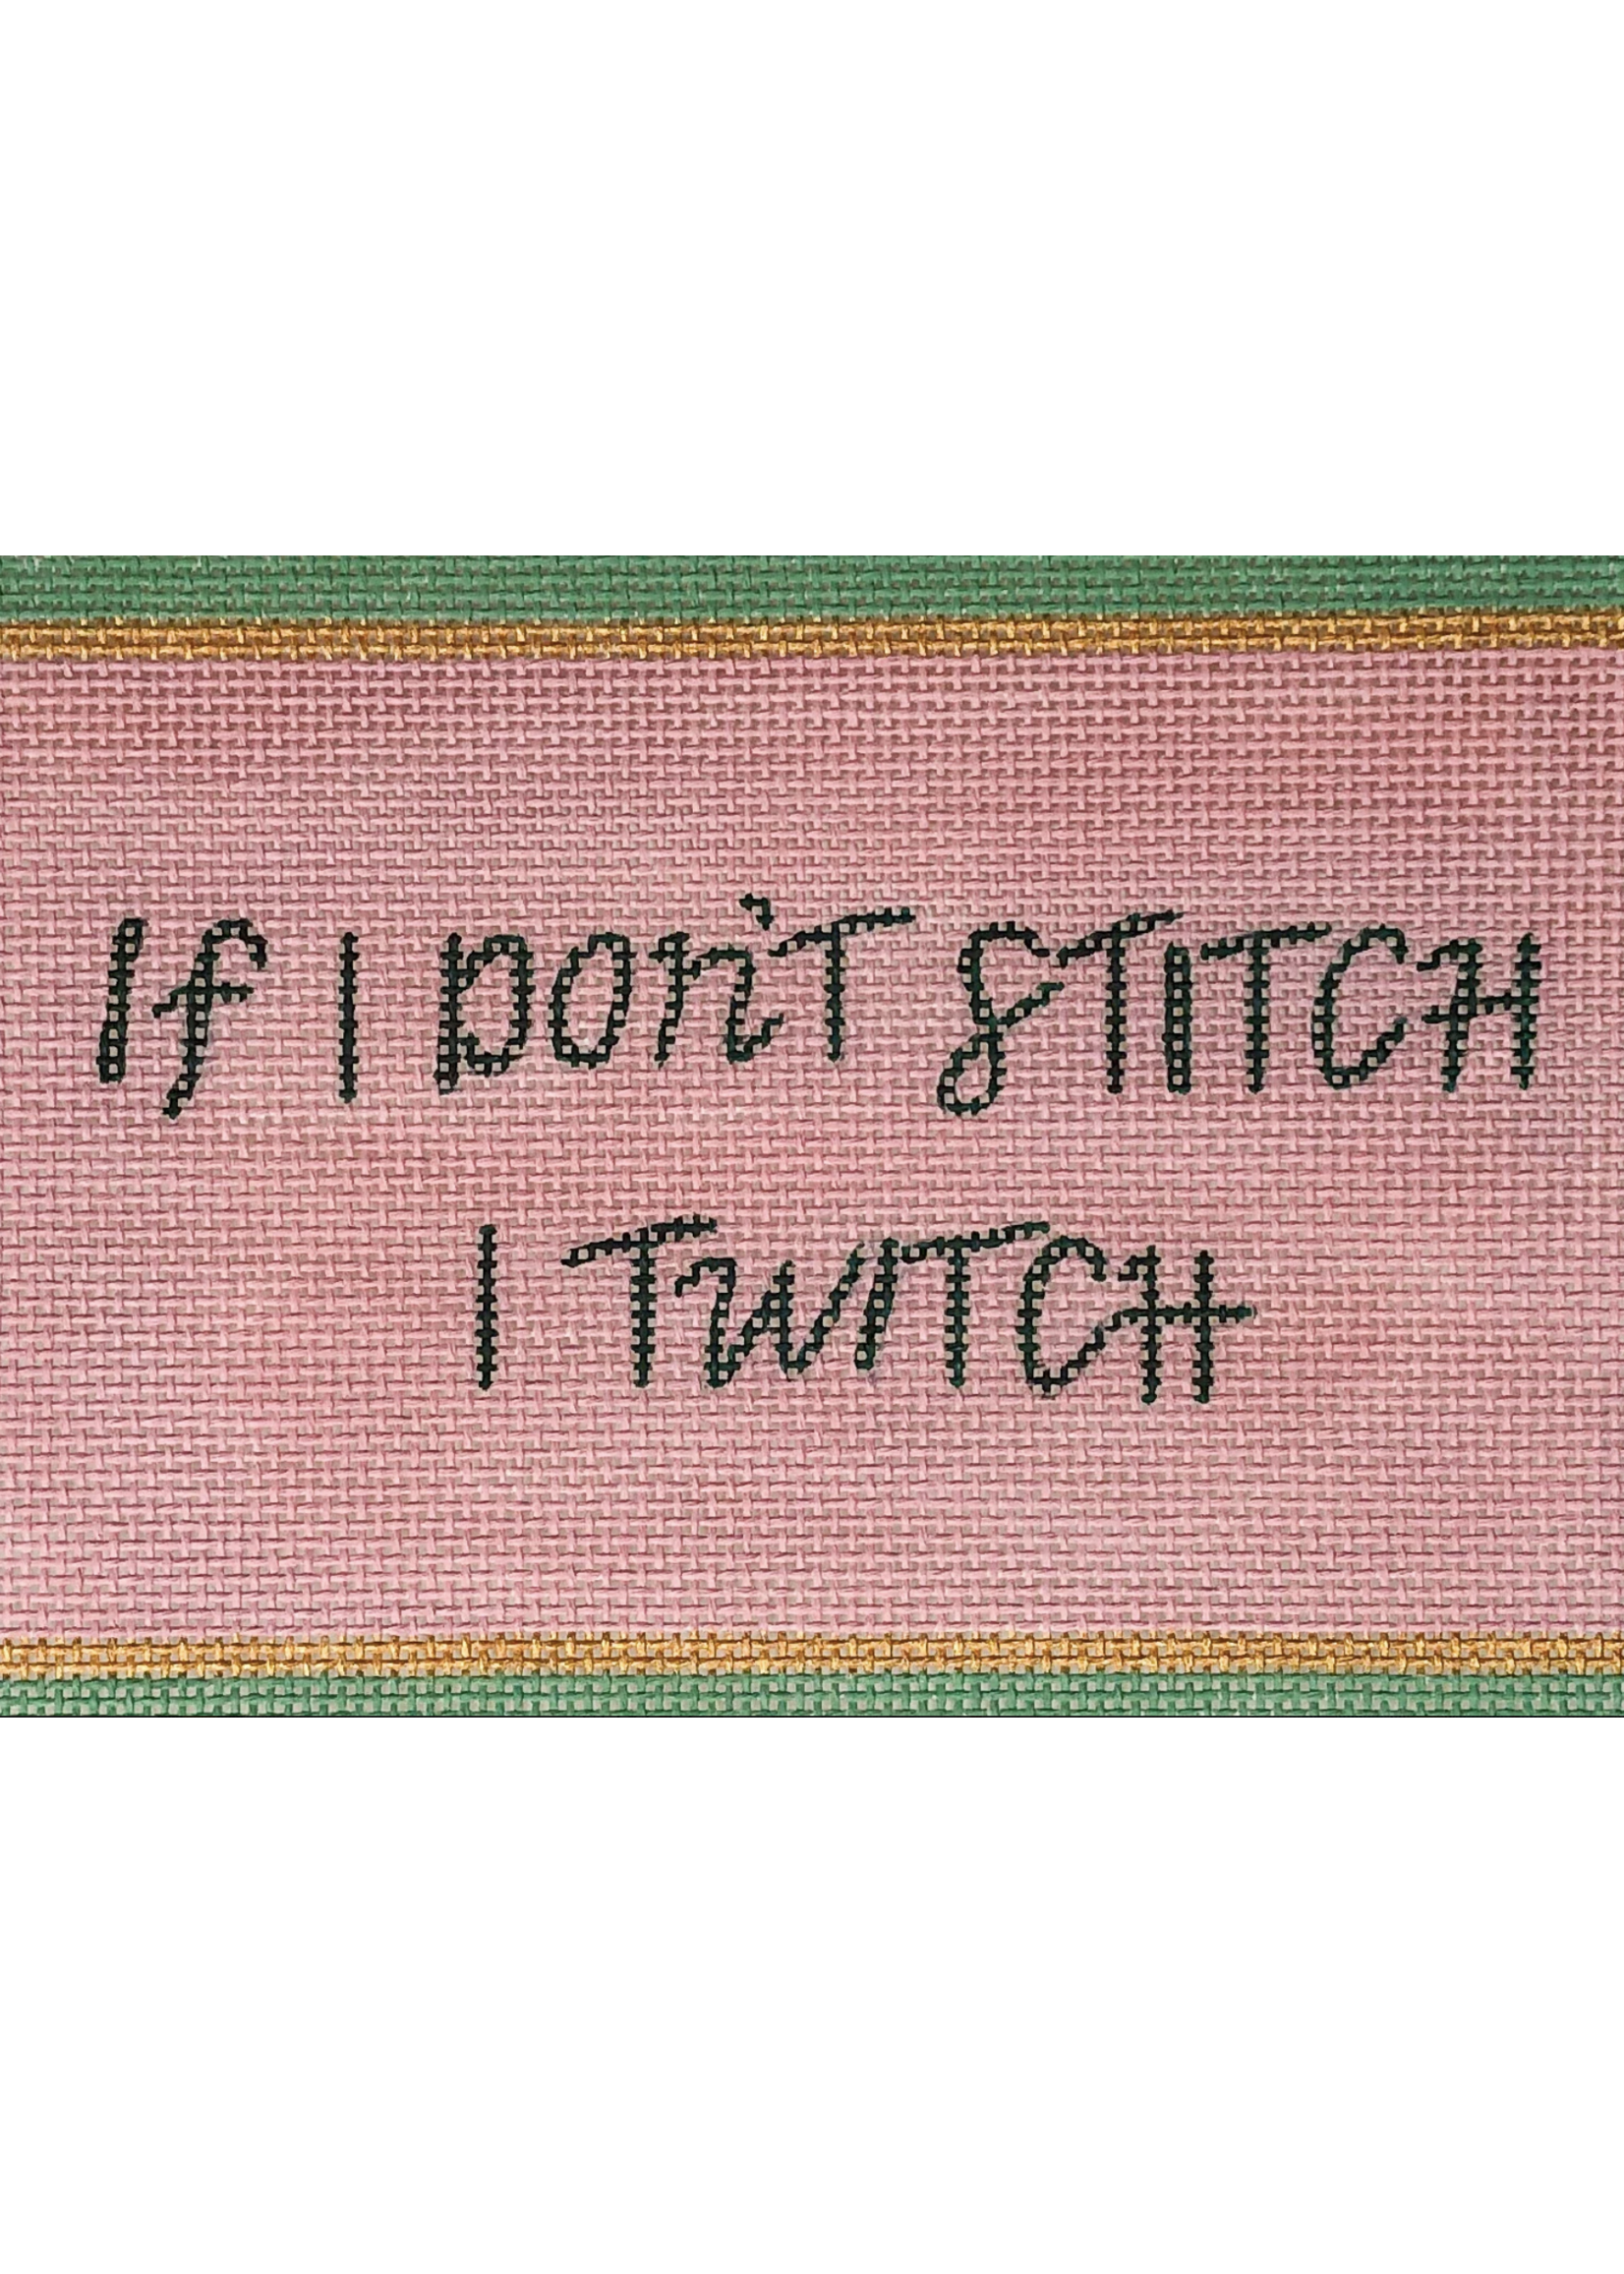 If I Don’t Stitch I Twitch 13ct